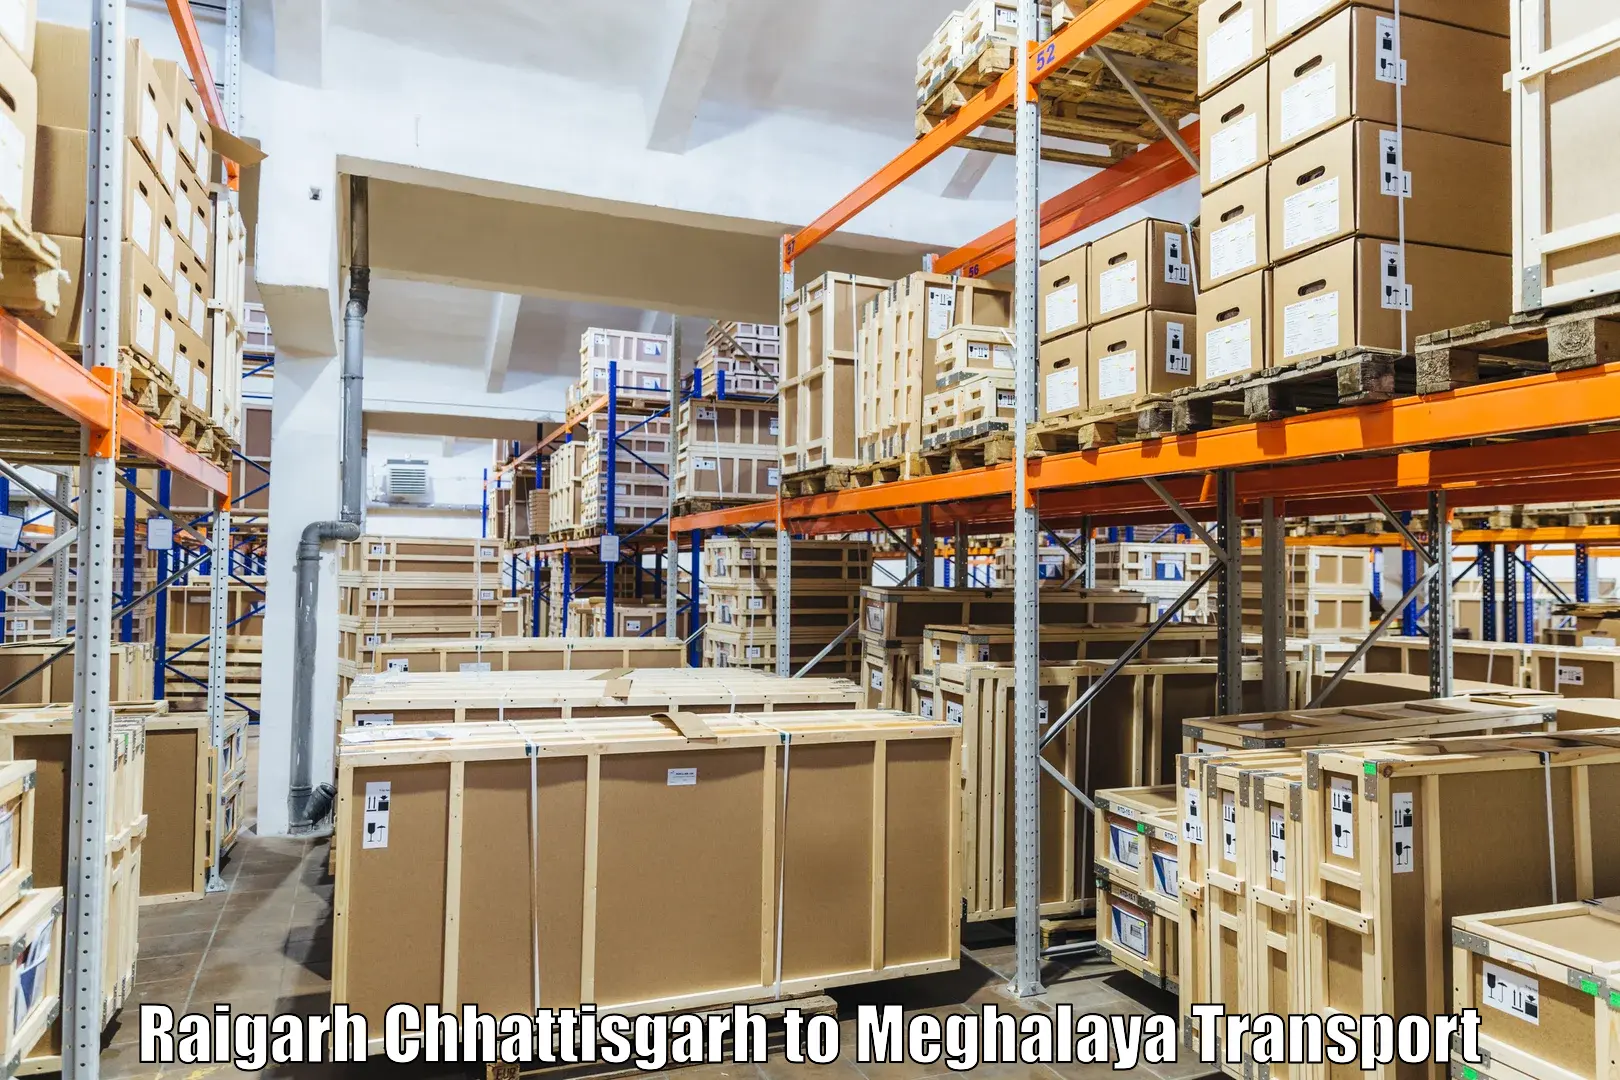 Container transport service in Raigarh Chhattisgarh to Shillong